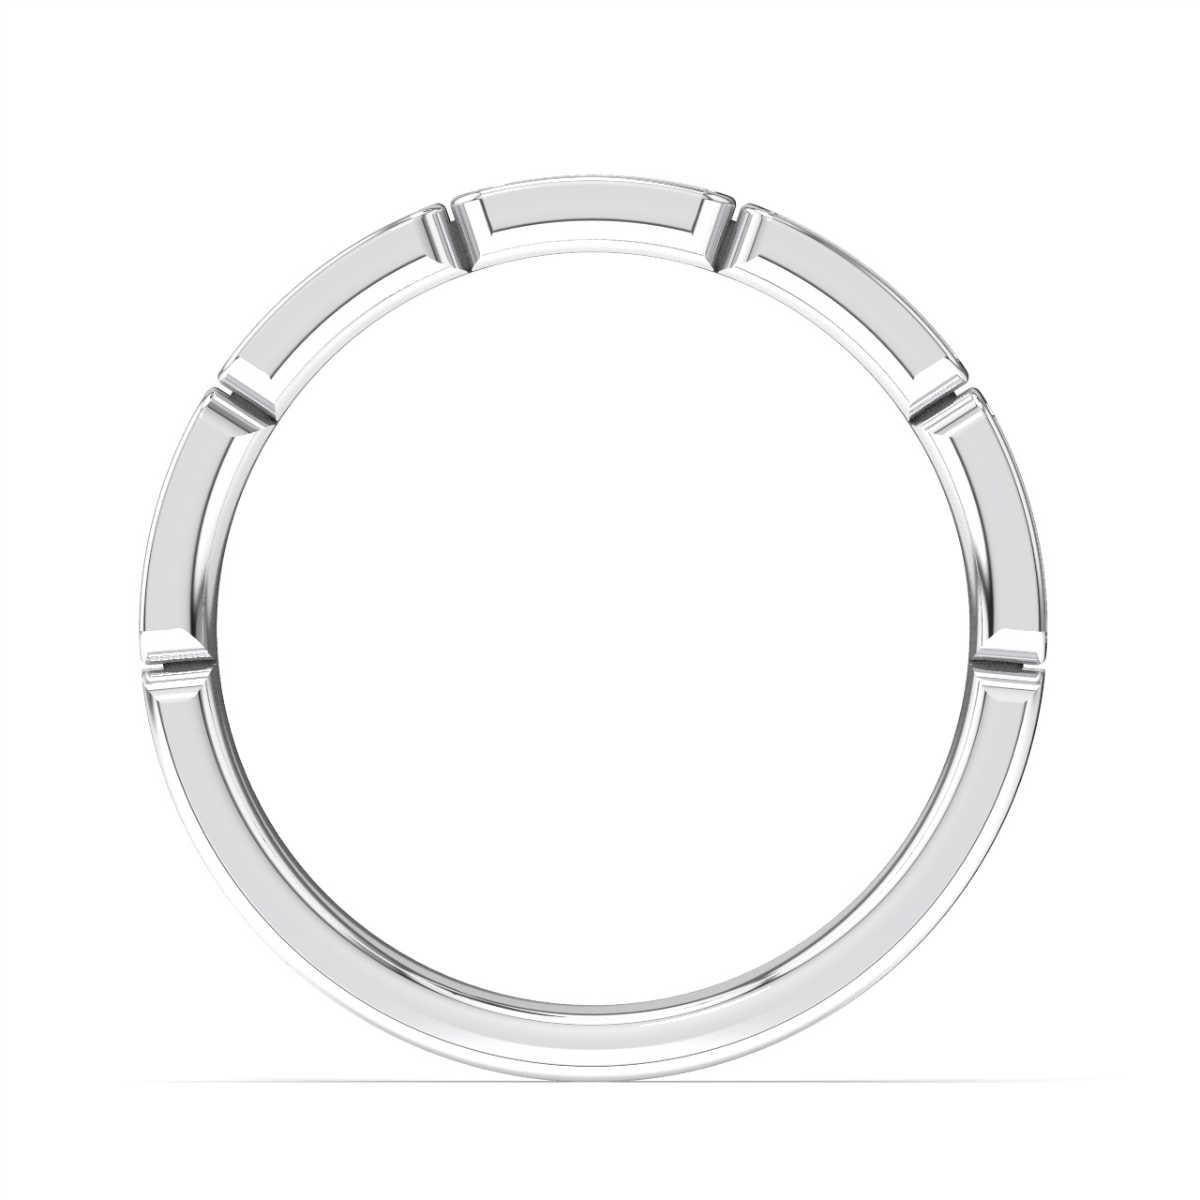 Dieser Ring im viktorianischen Stil weist 15 runde Brillanten auf, die in 5 Zacken gefasst sind. Erleben Sie den Unterschied!

Einzelheiten zum Produkt: 

Farbe des zentralen Edelsteins: WEISS
Seite Edelstein Typ: NATURDIAMANT
Seite Edelstein Form: